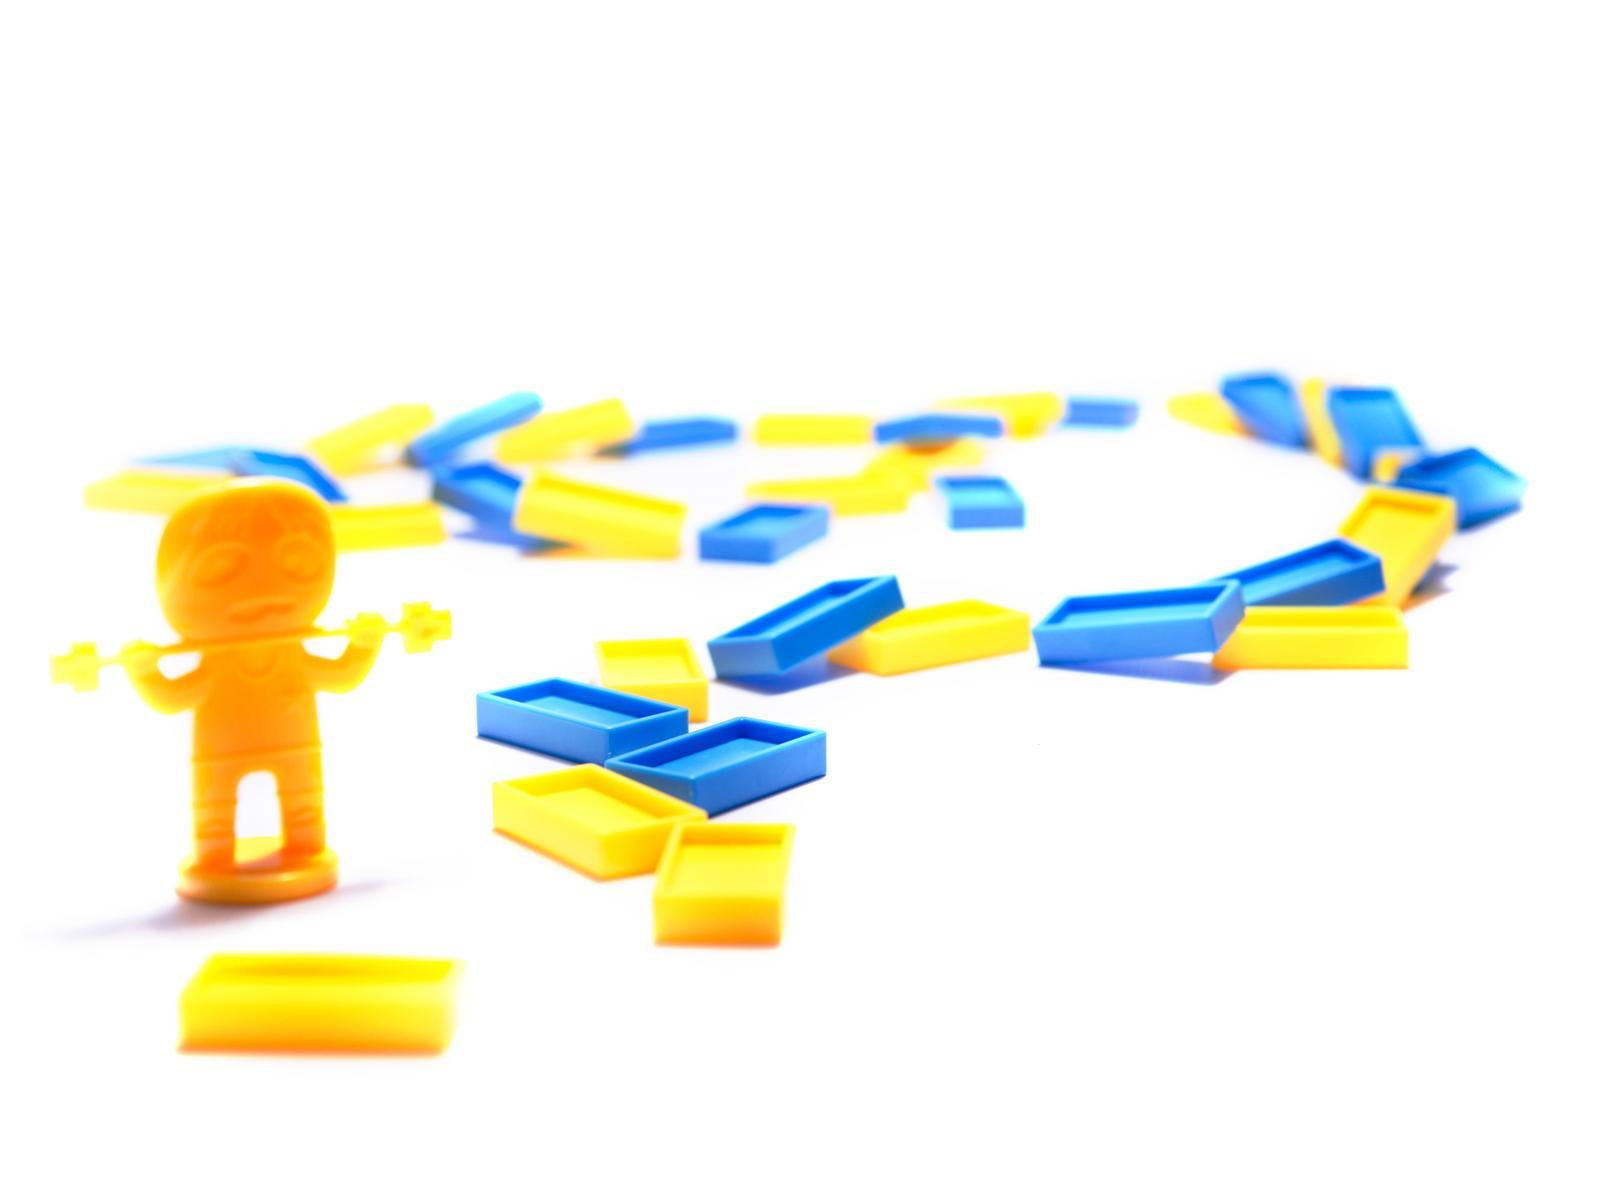 Pociąg Lokomotywa interaktywna układanka domino z kolejką zabawka dla dzieci 16x7x10 cm nr. 15